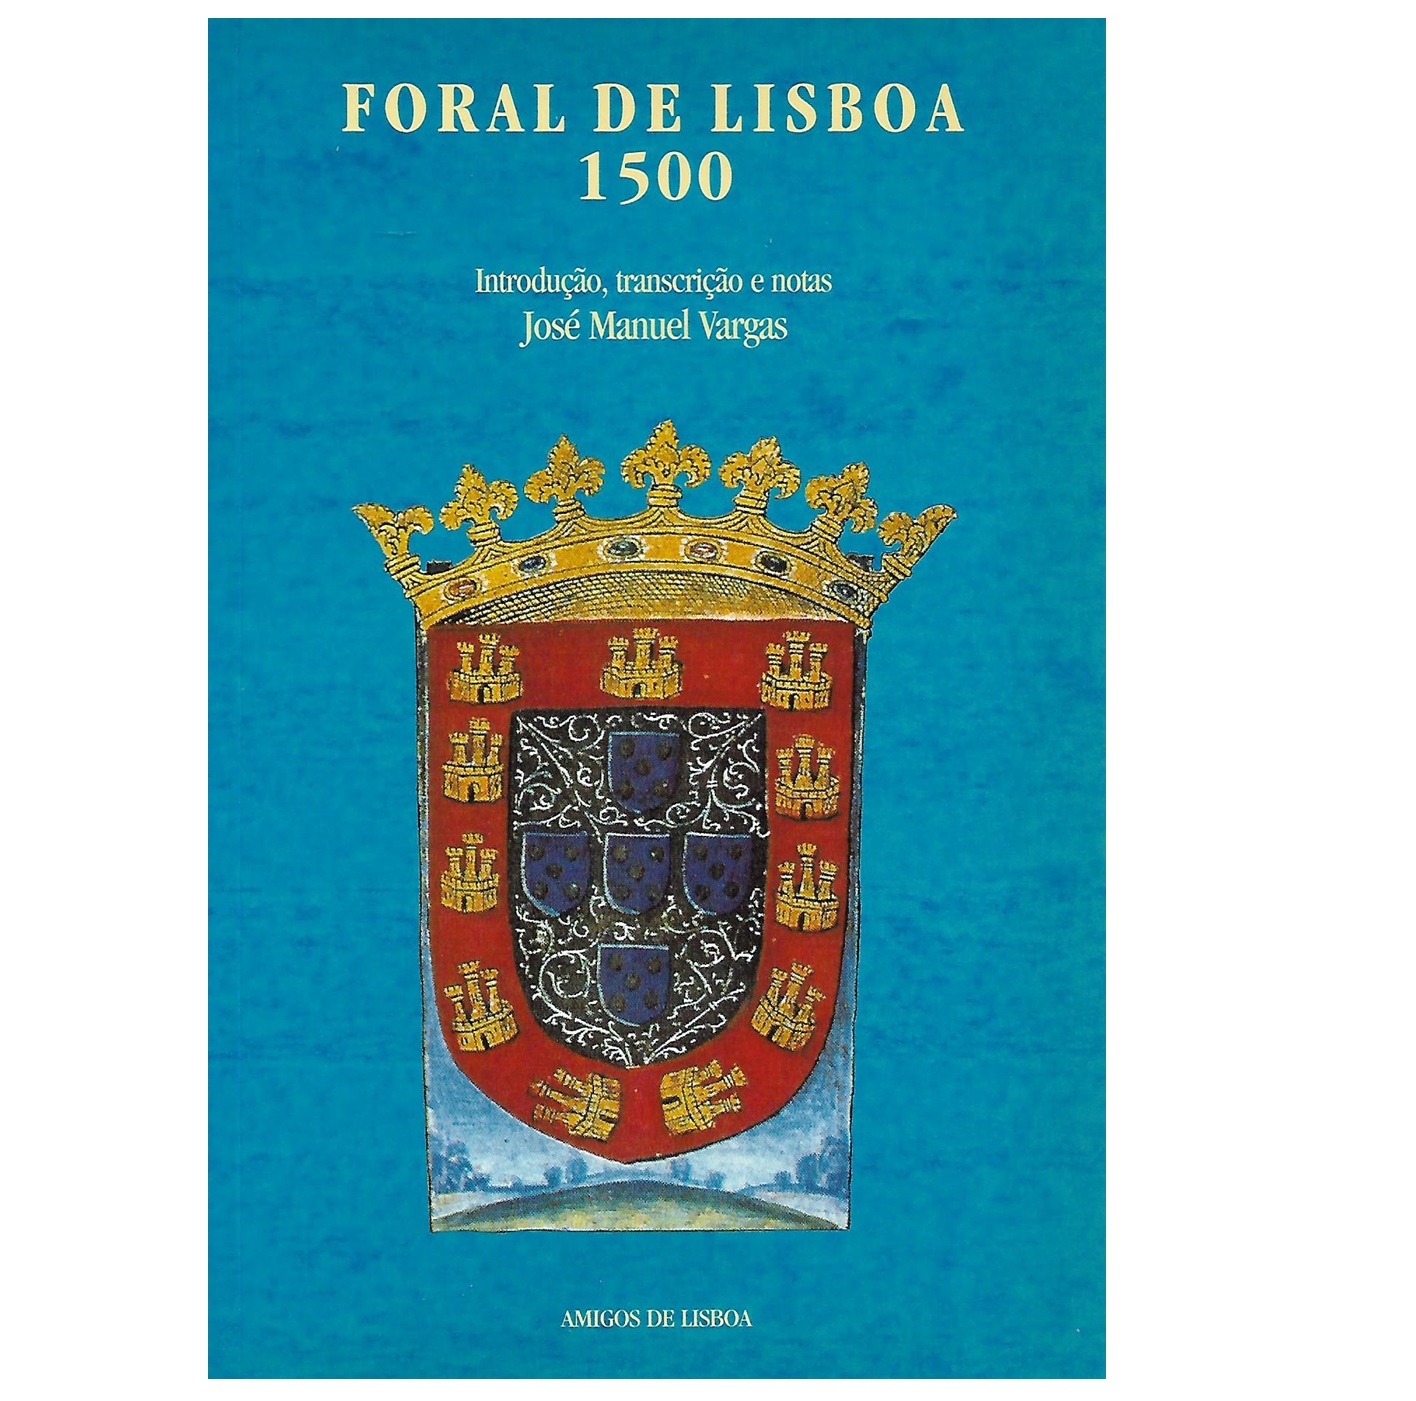 FORAL DE LISBOA 1500